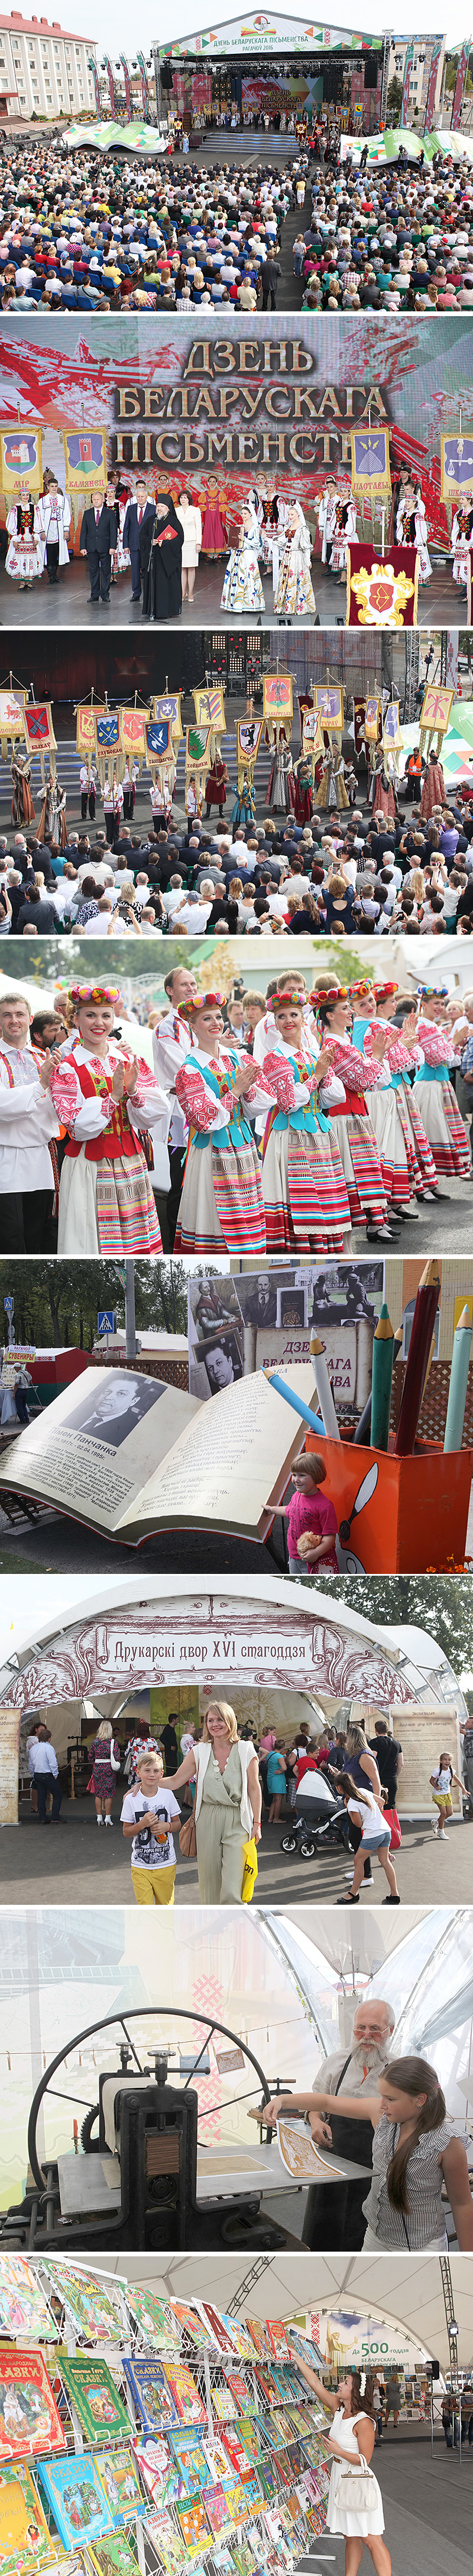 XXIII День белорусской письменности в Рогачеве (2016)